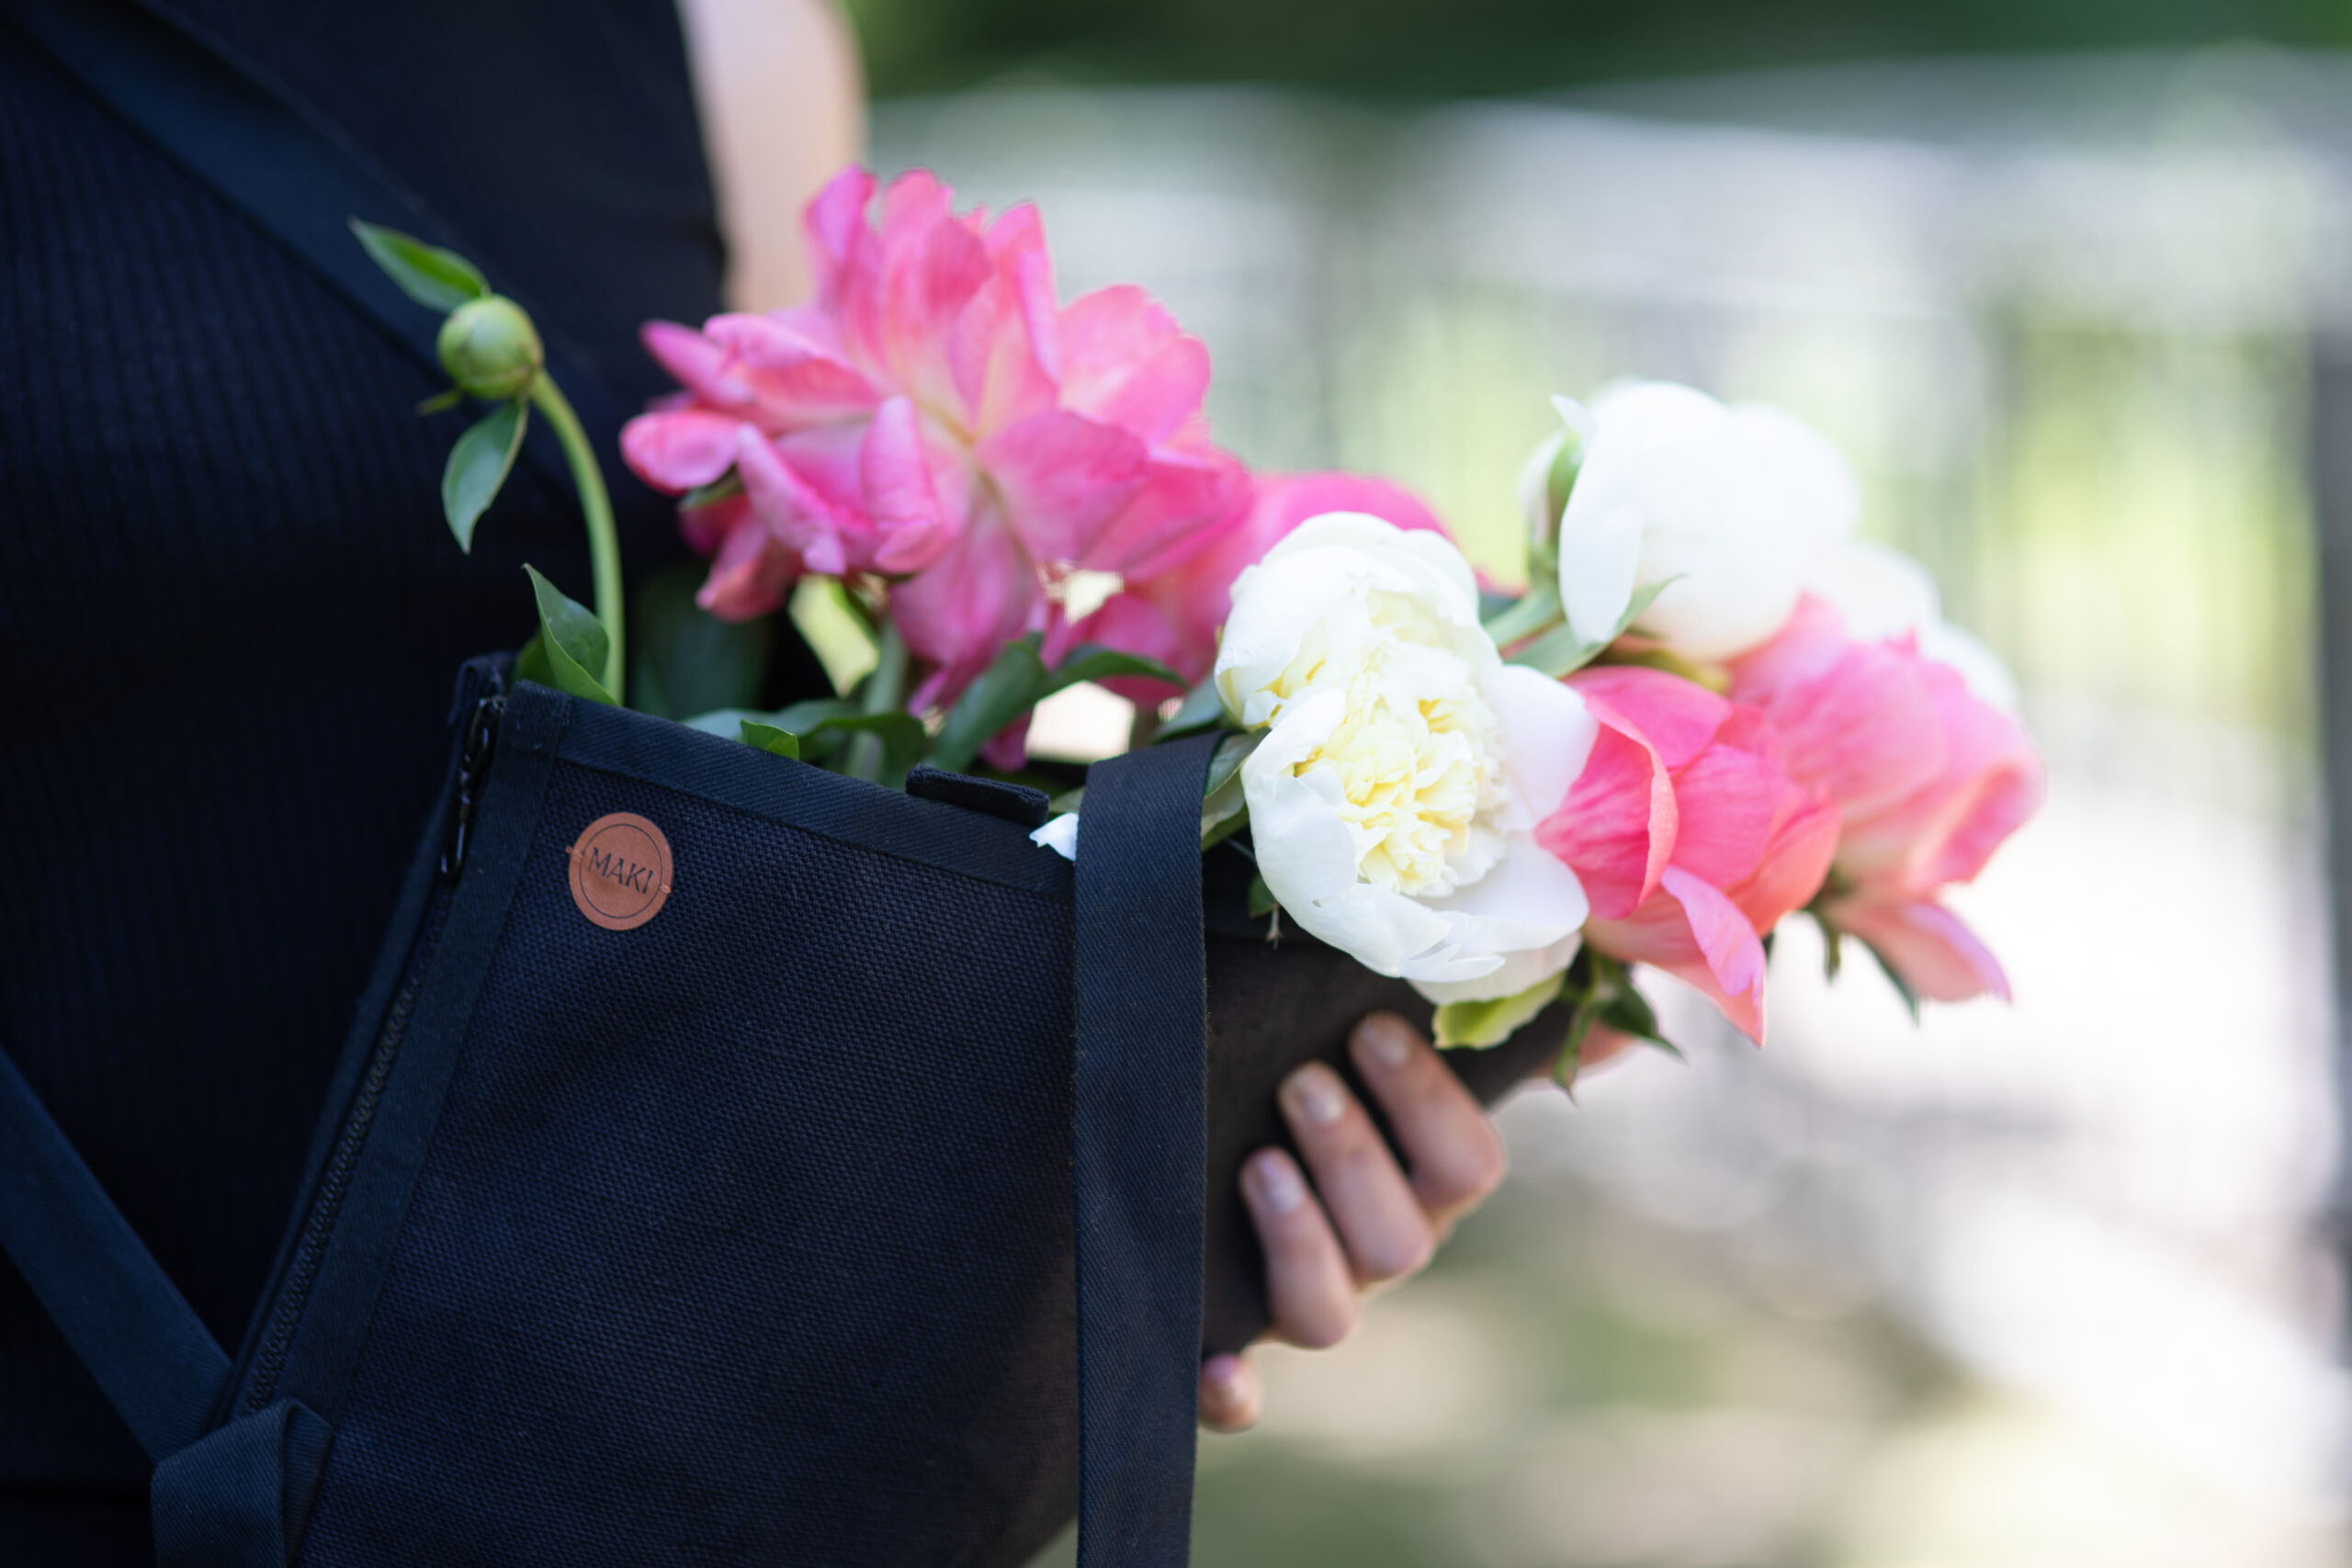 W czarnym lnianym nosidle na kwiaty postać trzyma rozkwitnięte różowe i białe piwonie.